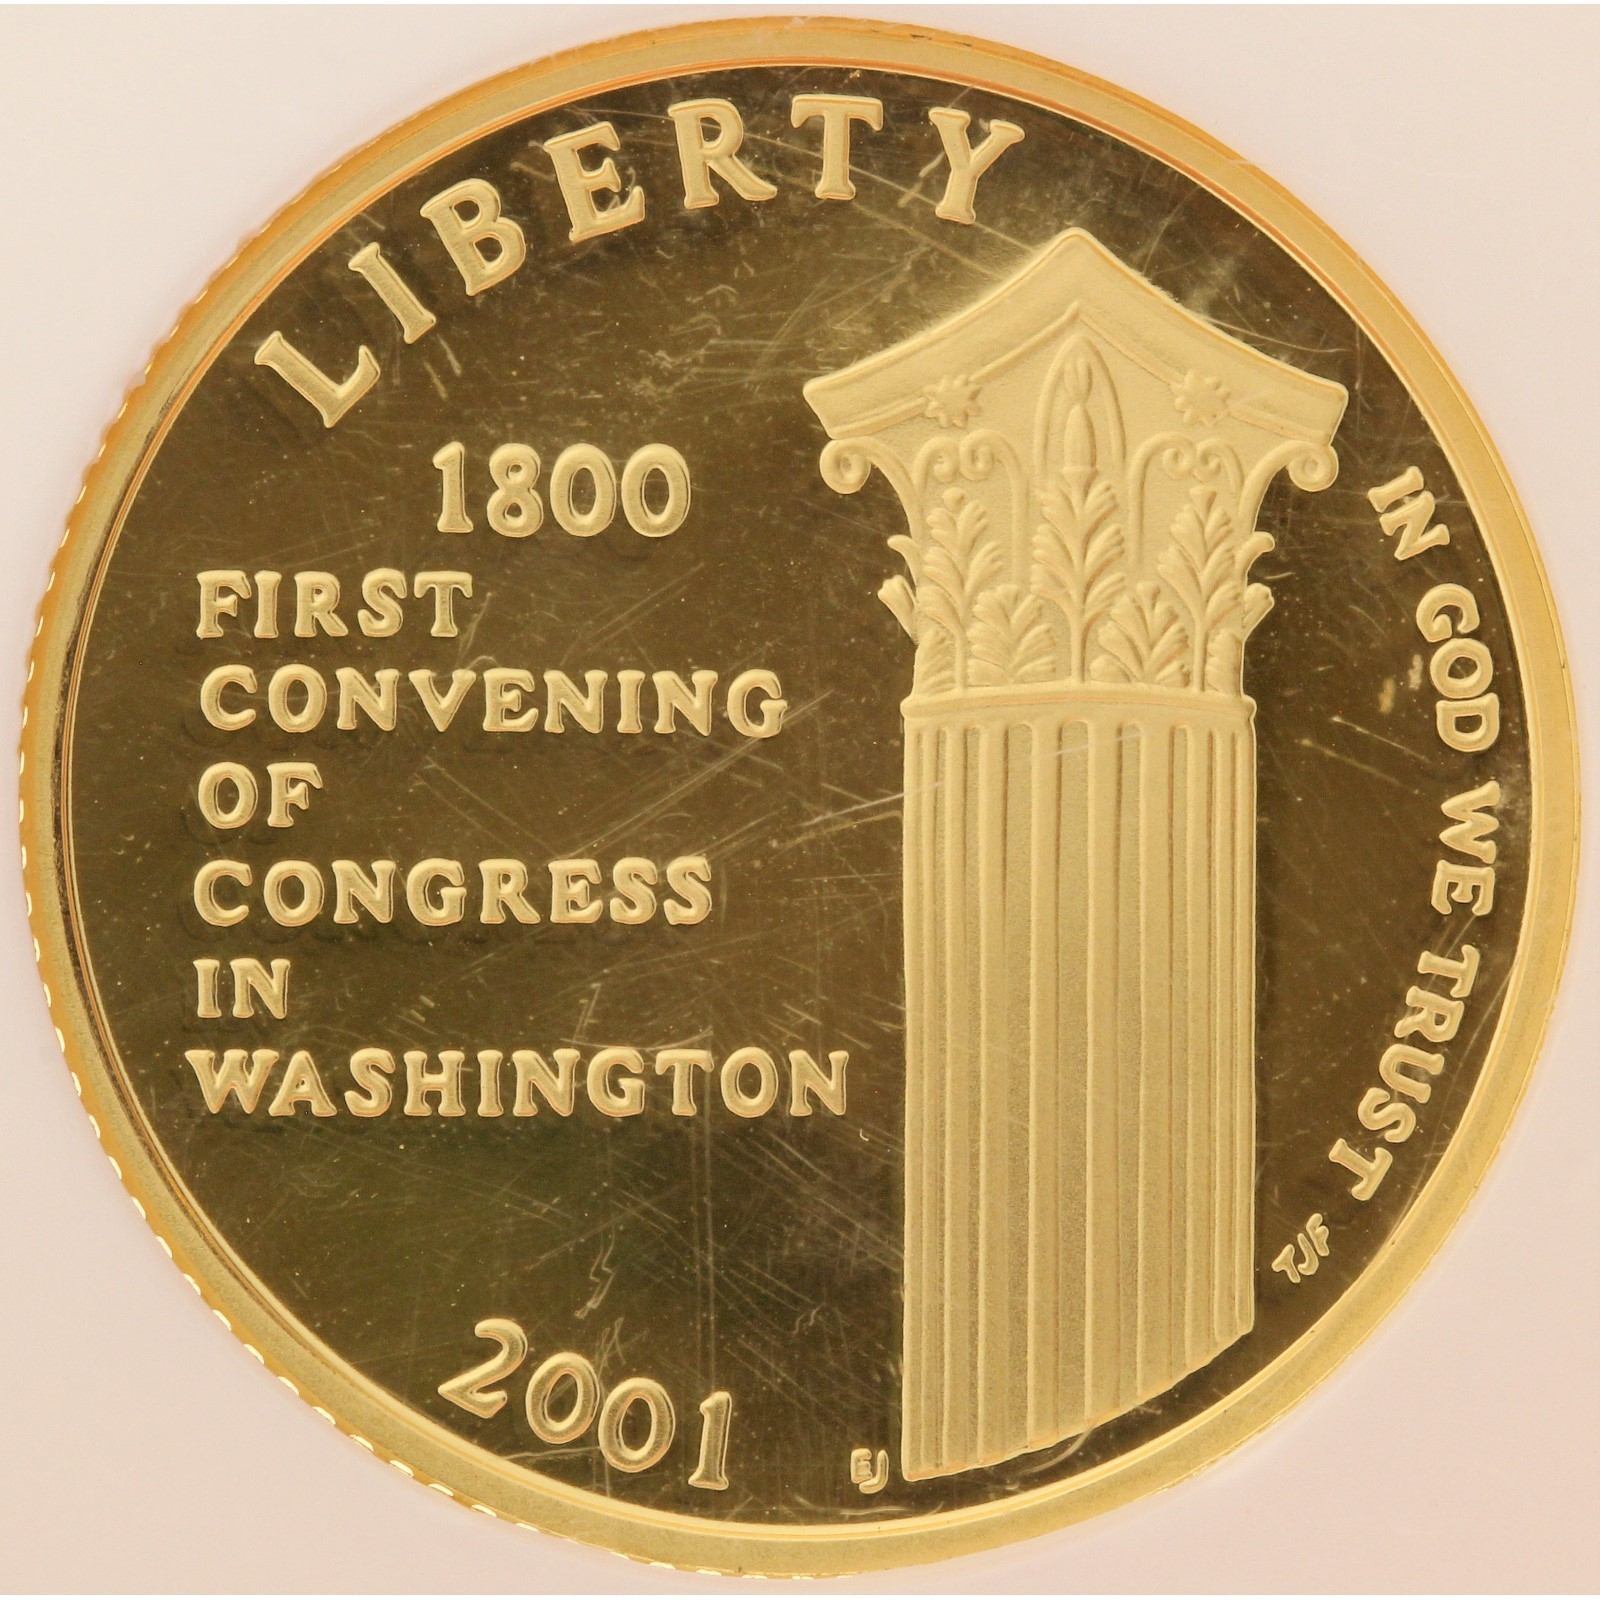 USA - 5 Dollars - 2001 - U.S. Capitol Visitor Center - NGC 69 Ultra Cameo